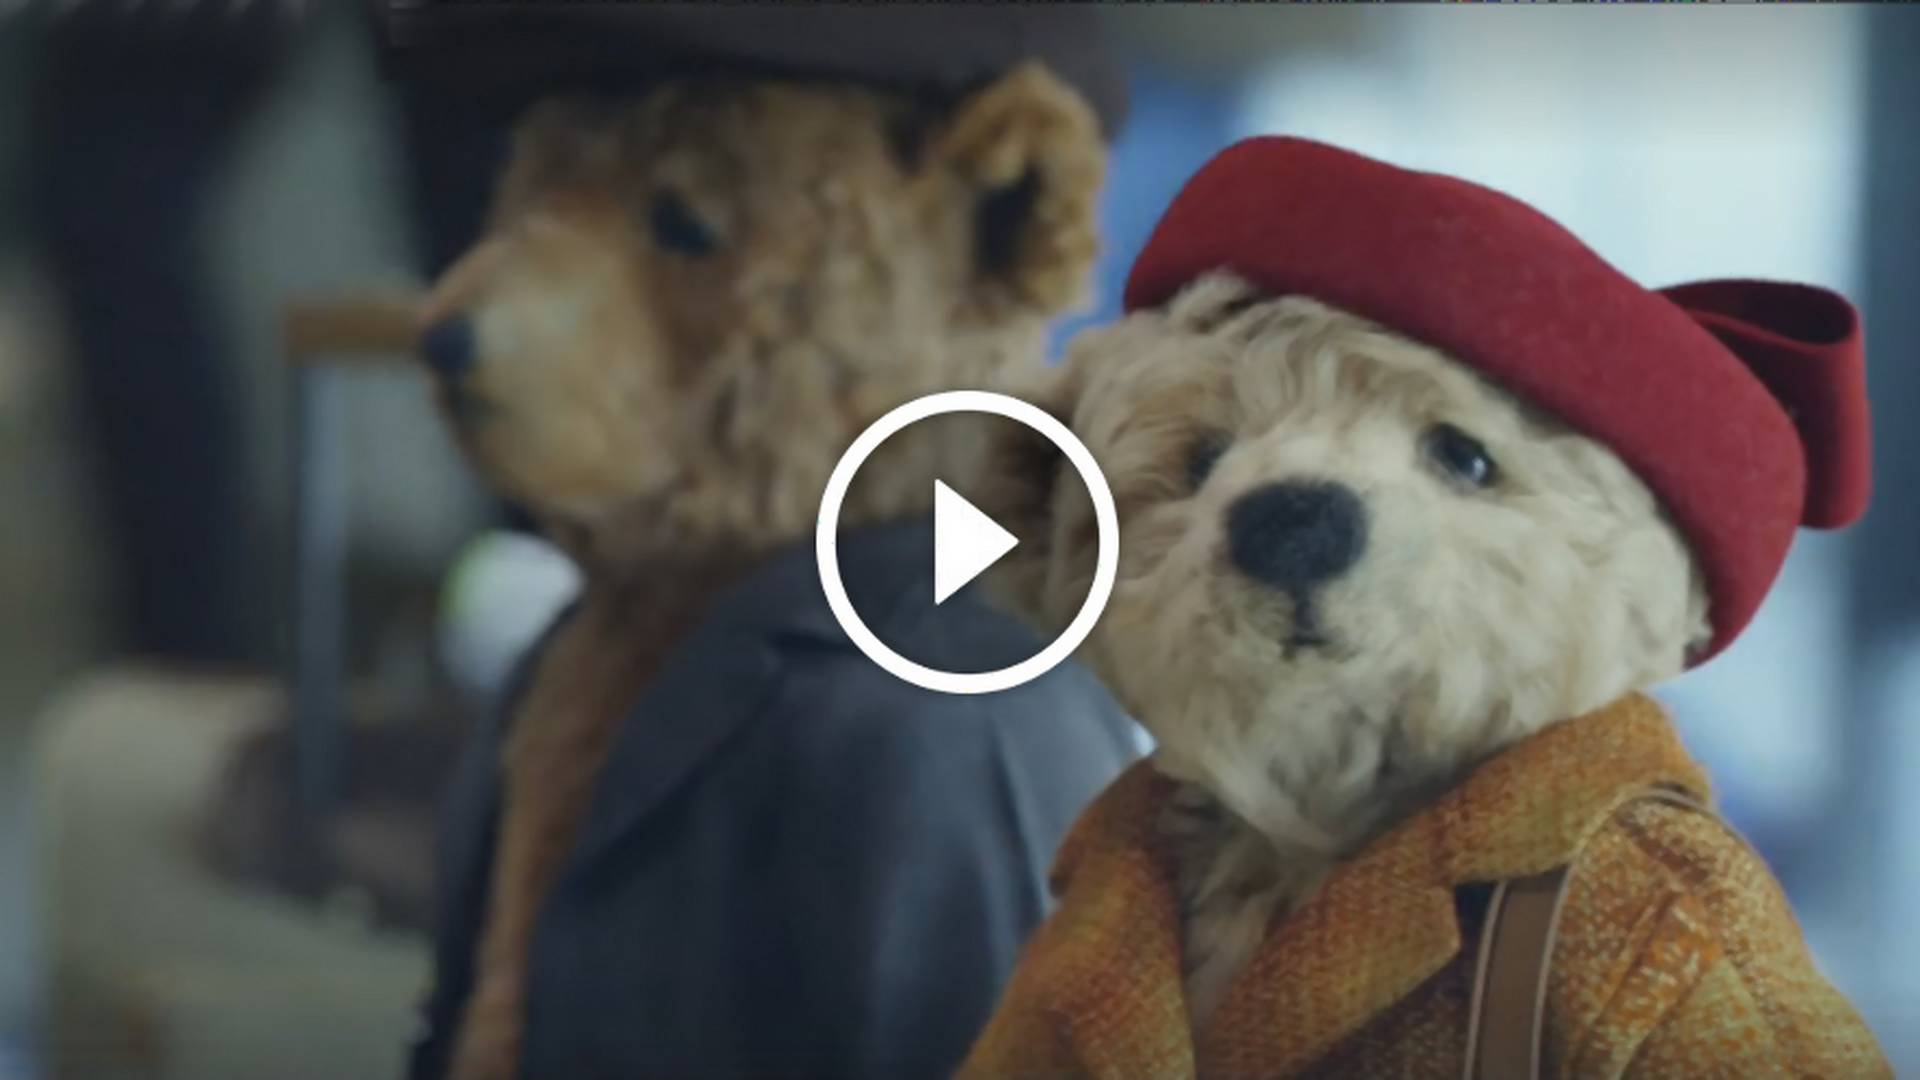 "Powrót do domu - najlepszy prezent na Gwiazdkę": ta świąteczna reklama wywołuje miłe ciepło na ♥